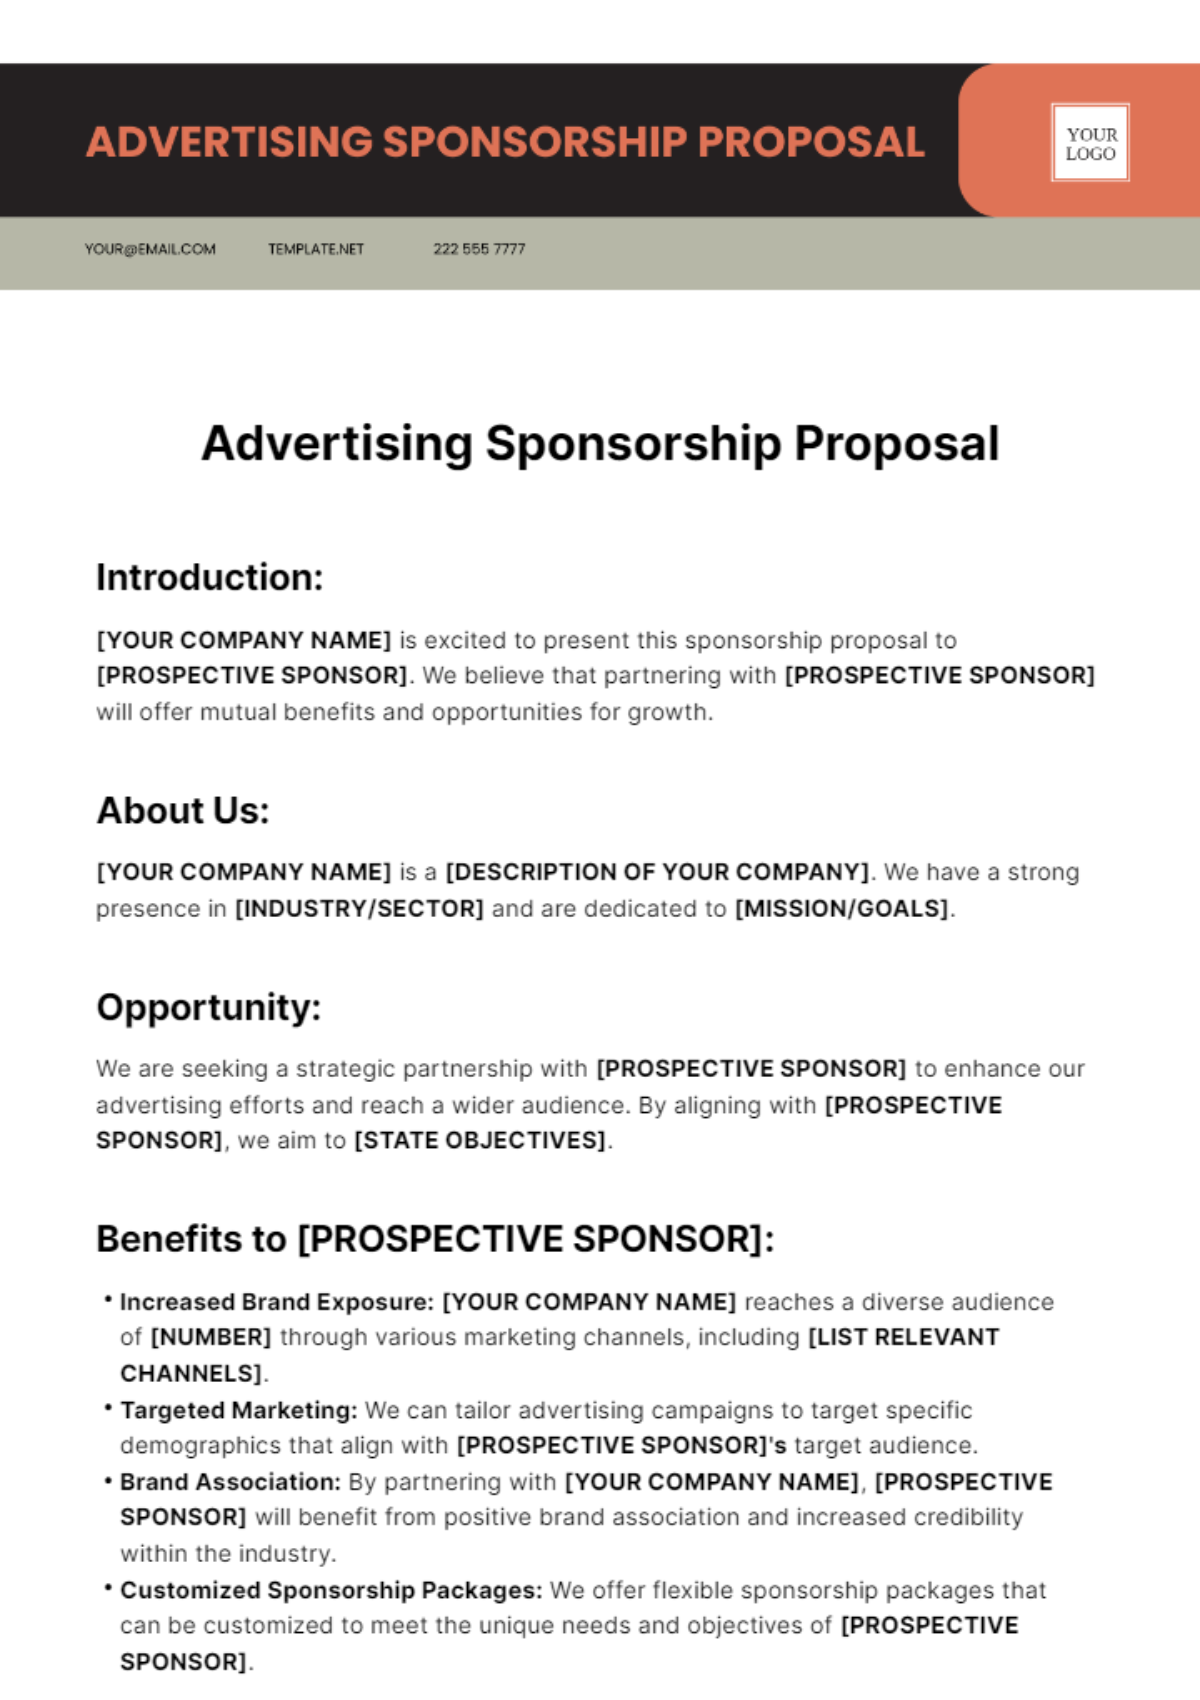 Free Advertising Sponsorship Proposal Template